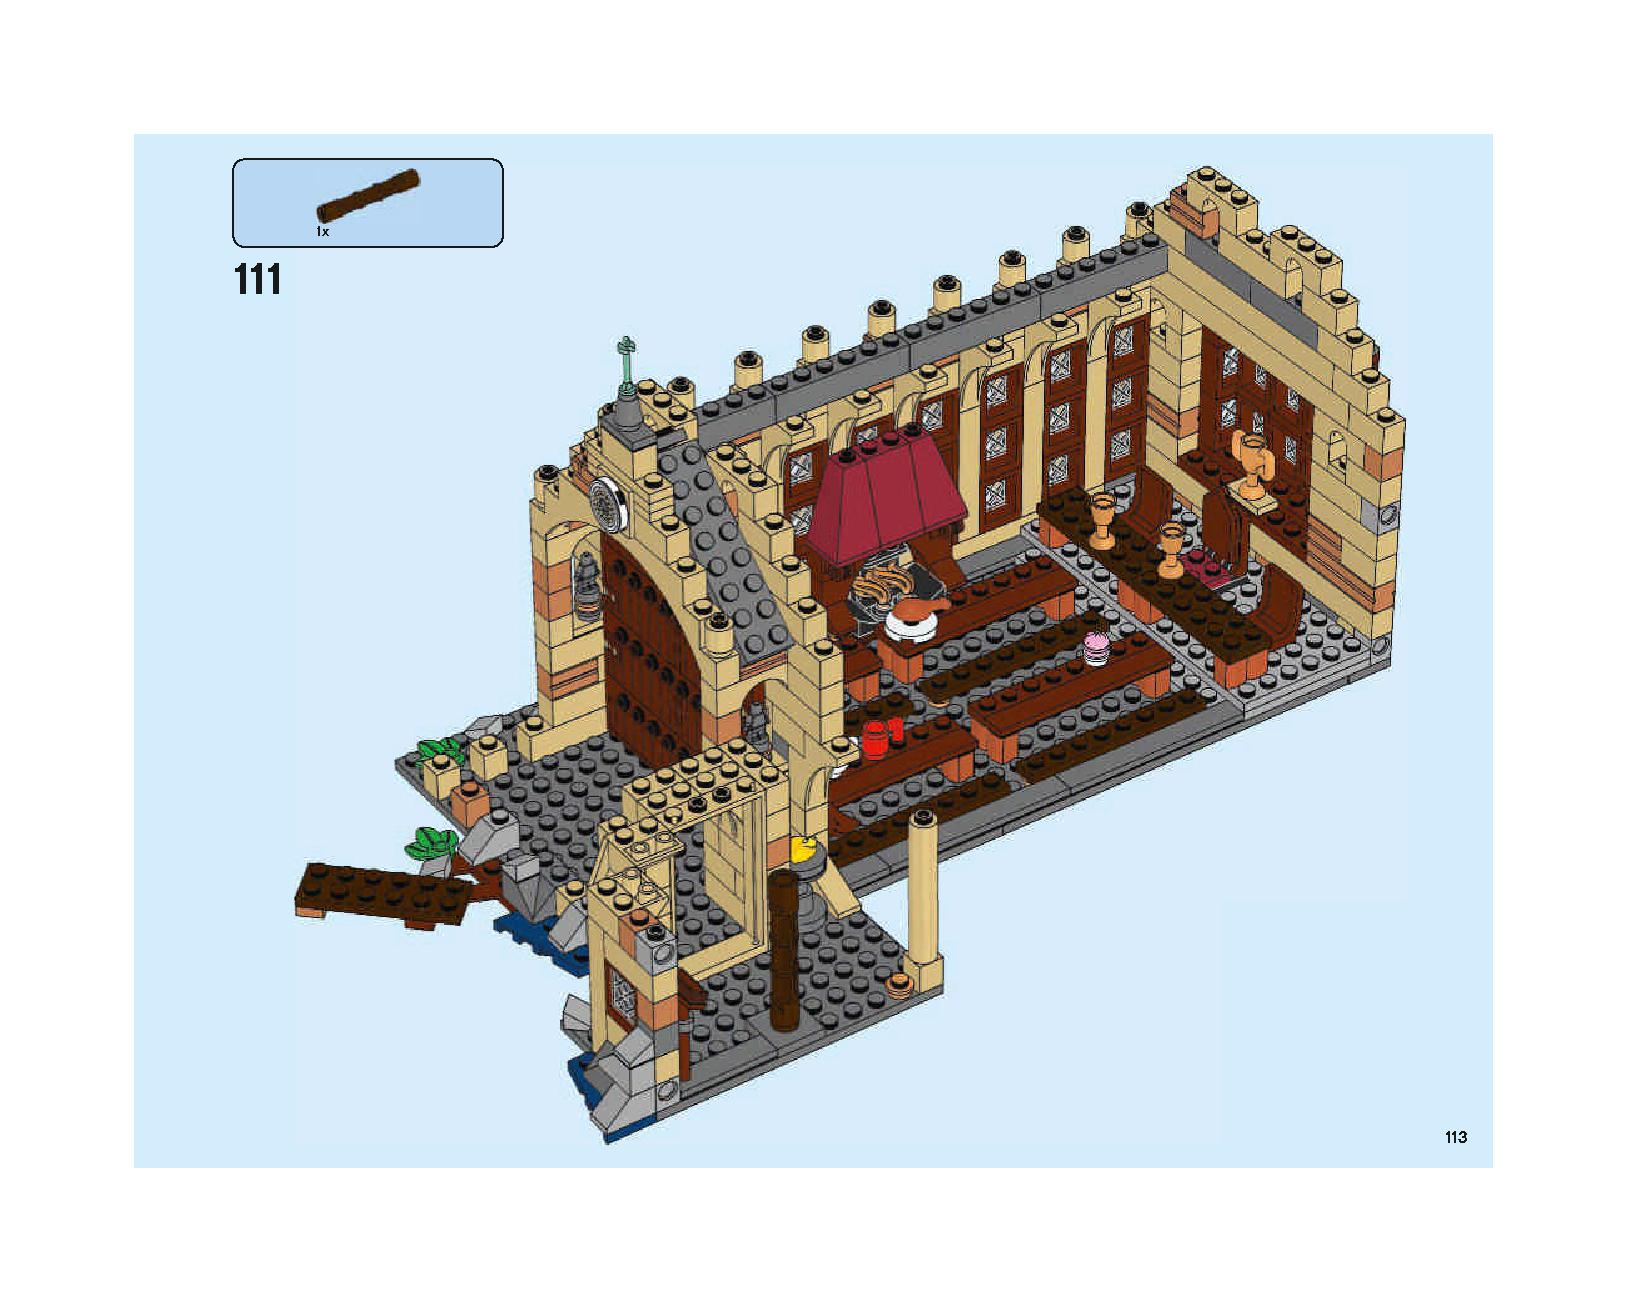 ホグワーツの大広間 75954 レゴの商品情報 レゴの説明書・組立方法 113 page